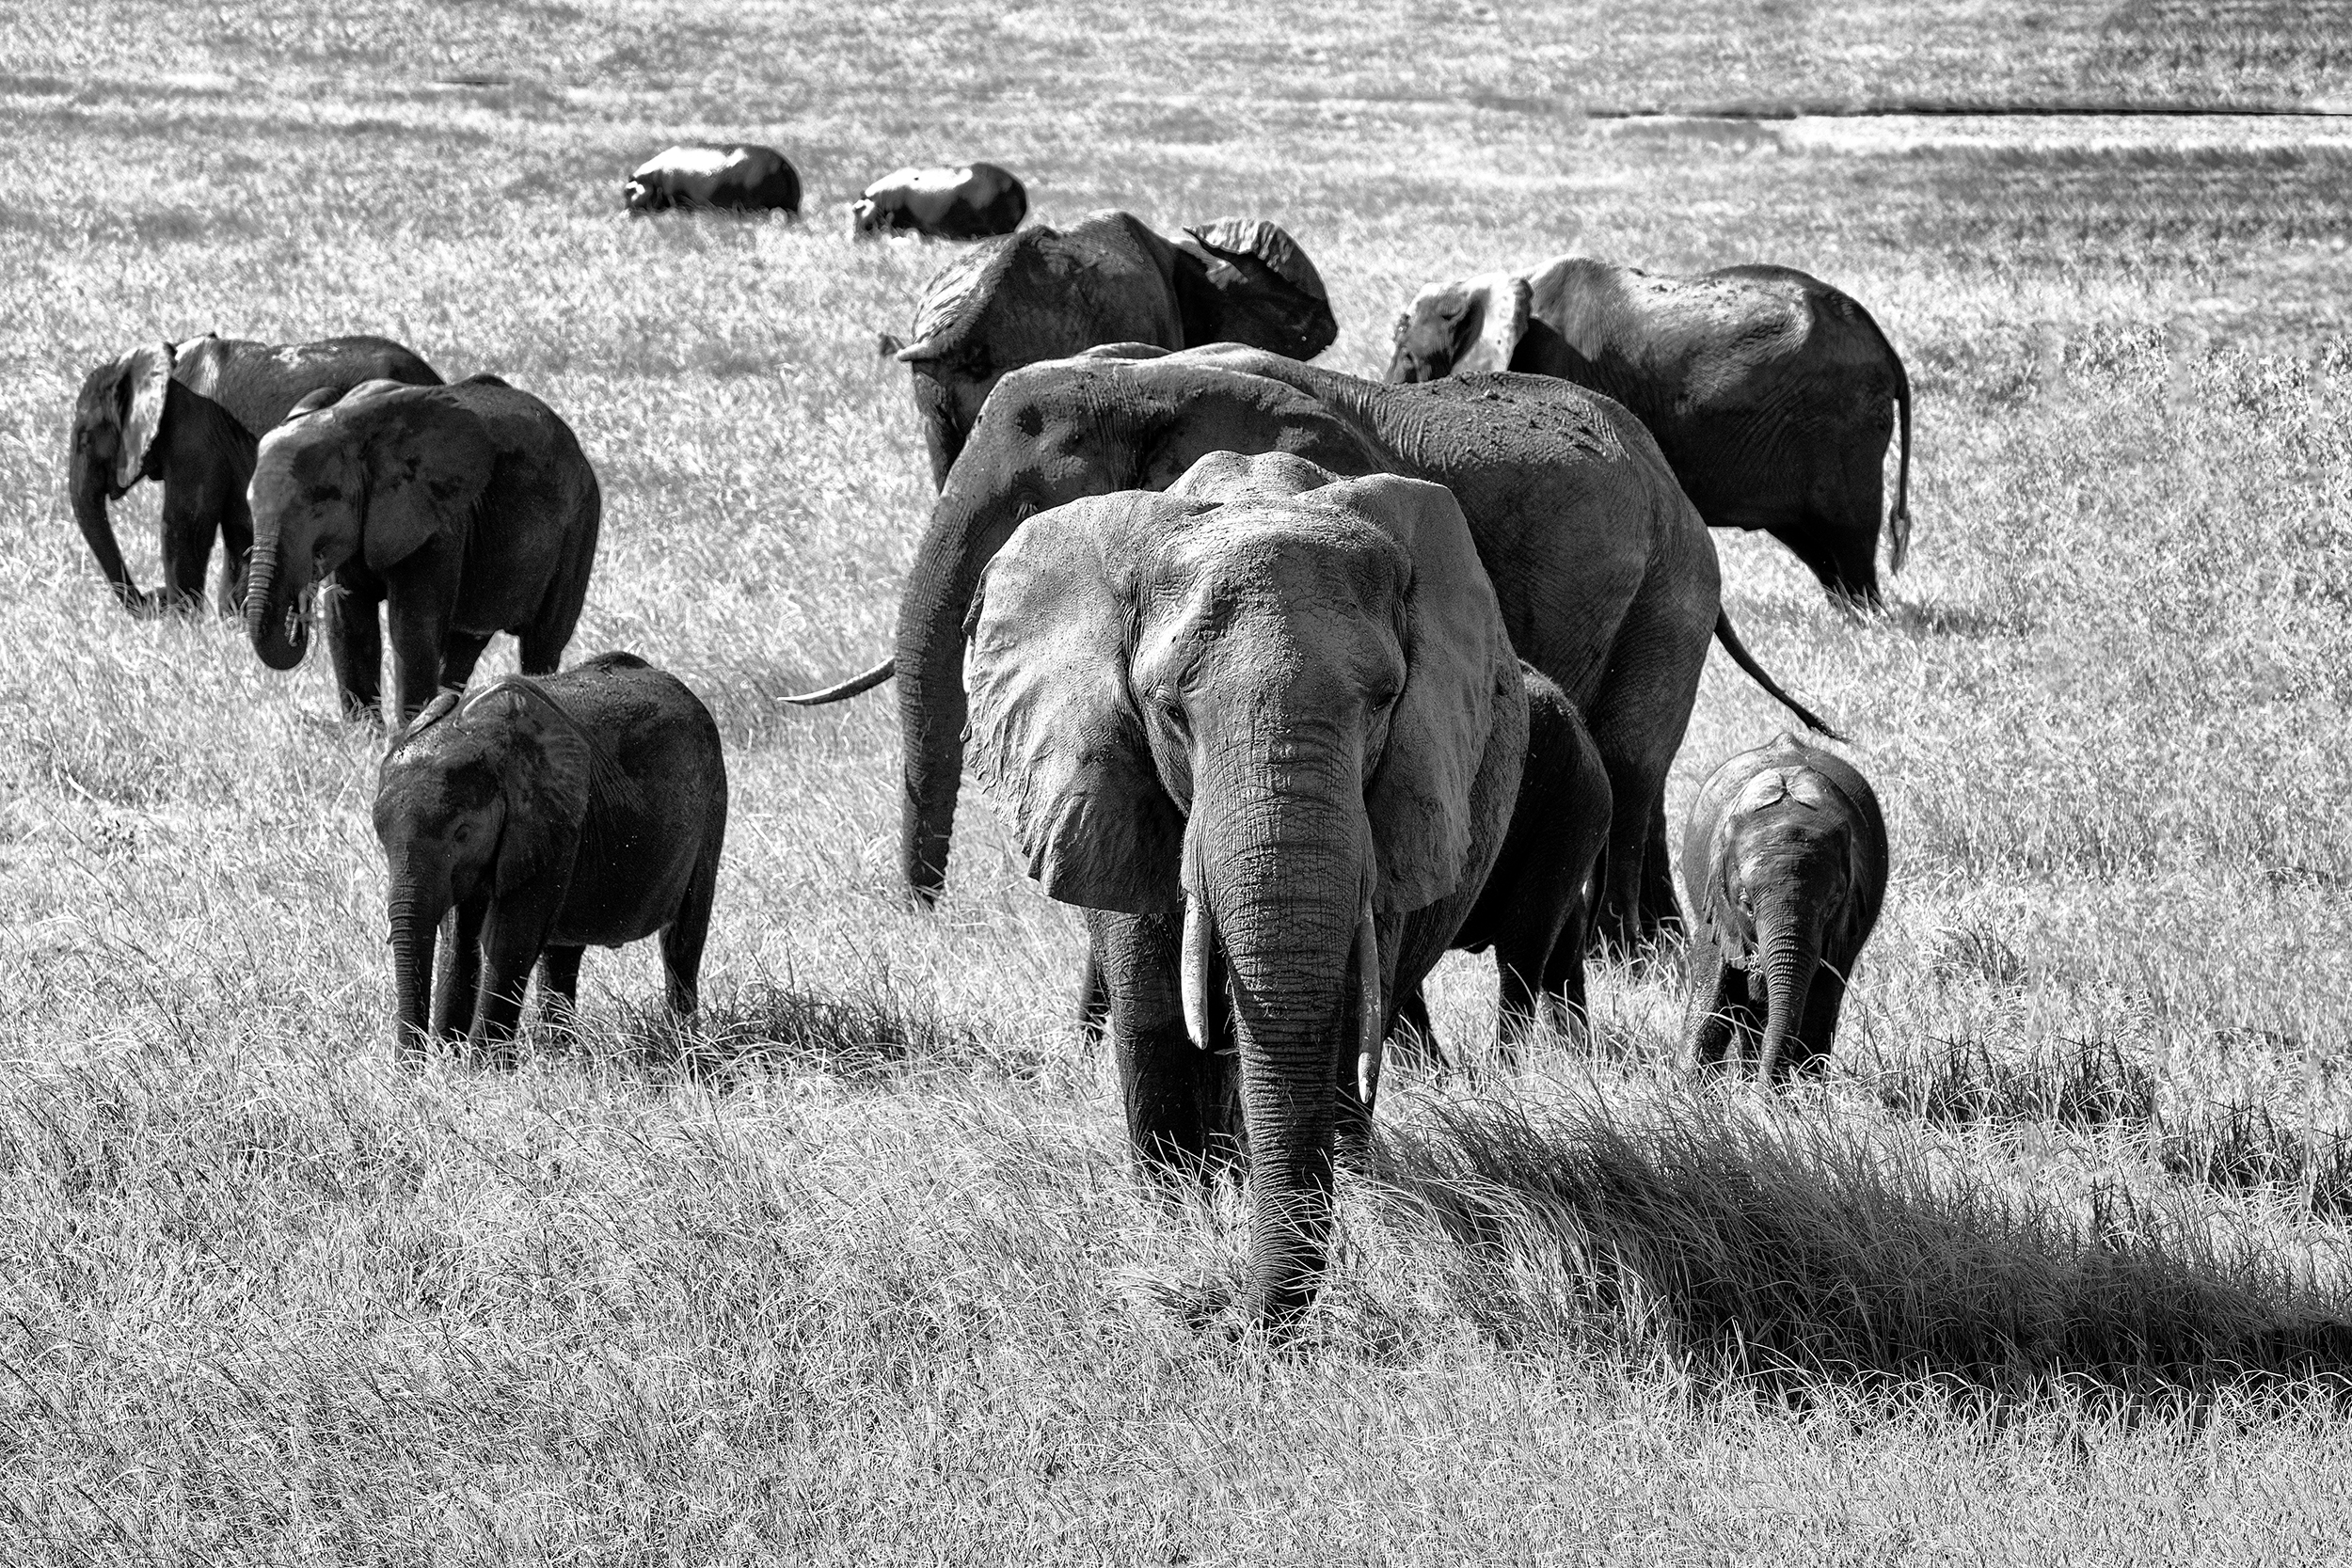 Elephant Family on the move, Chobe Park, Botswana